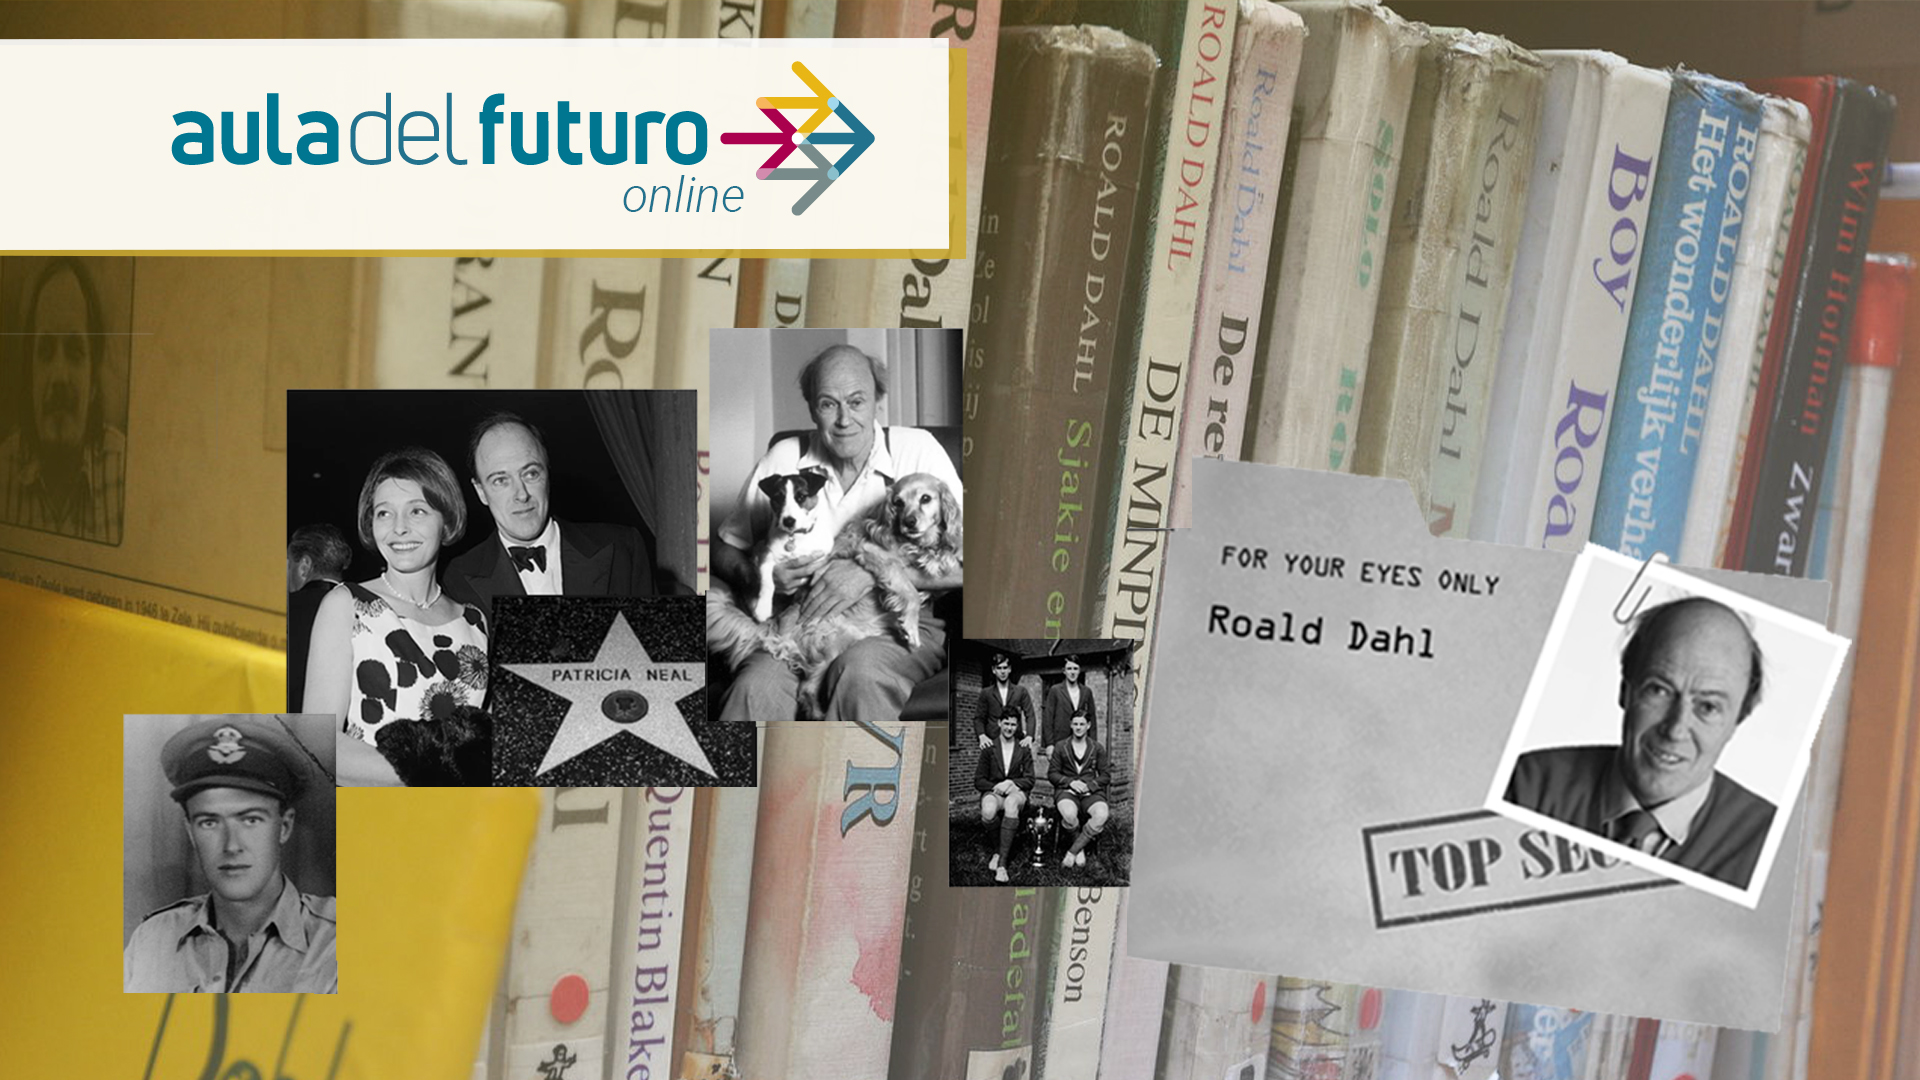 El aula del futuro online Roald Dahl